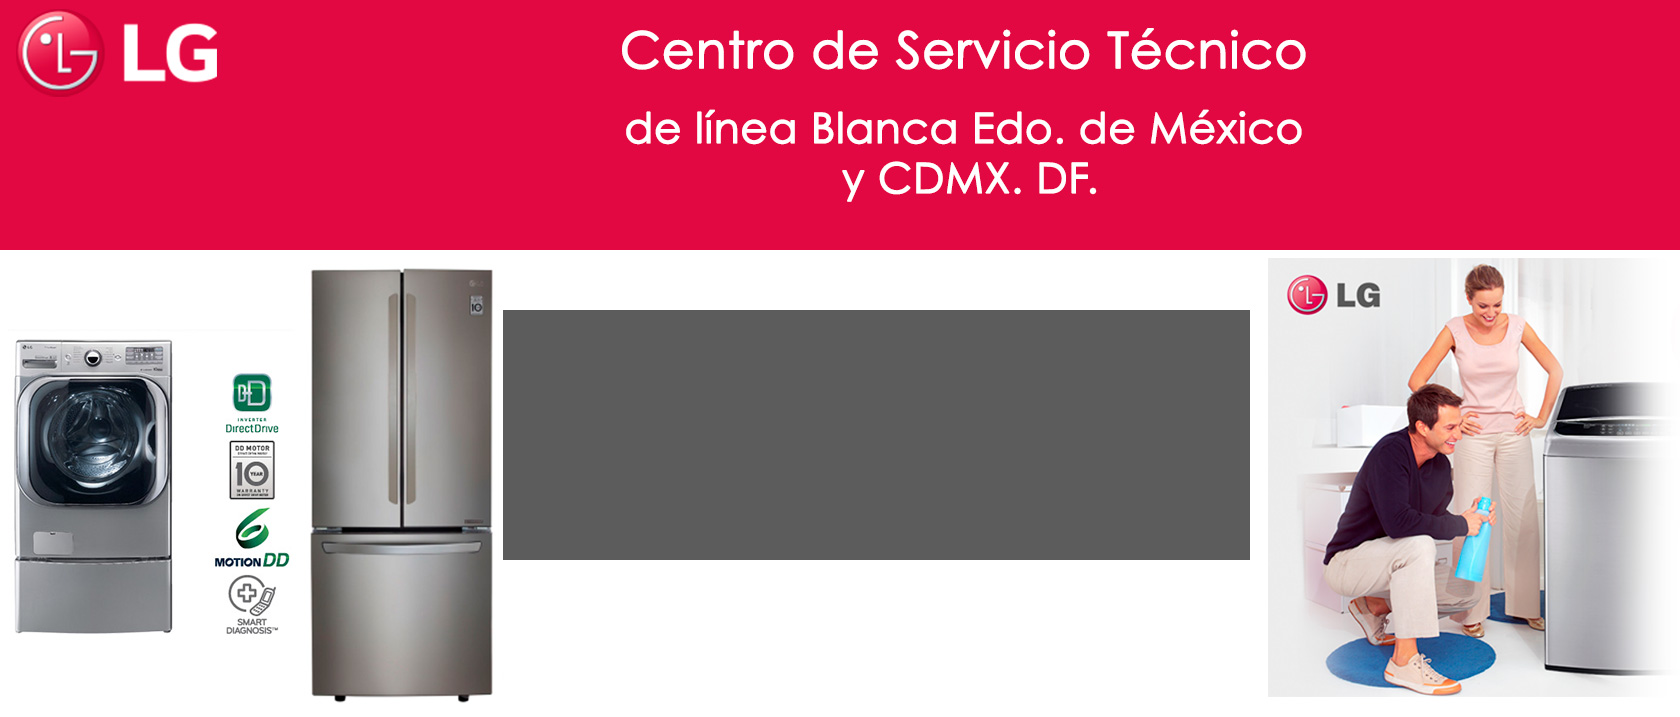 Centro de Servicio Tecnico De Linea Blanca lg Estado de Mexico DF